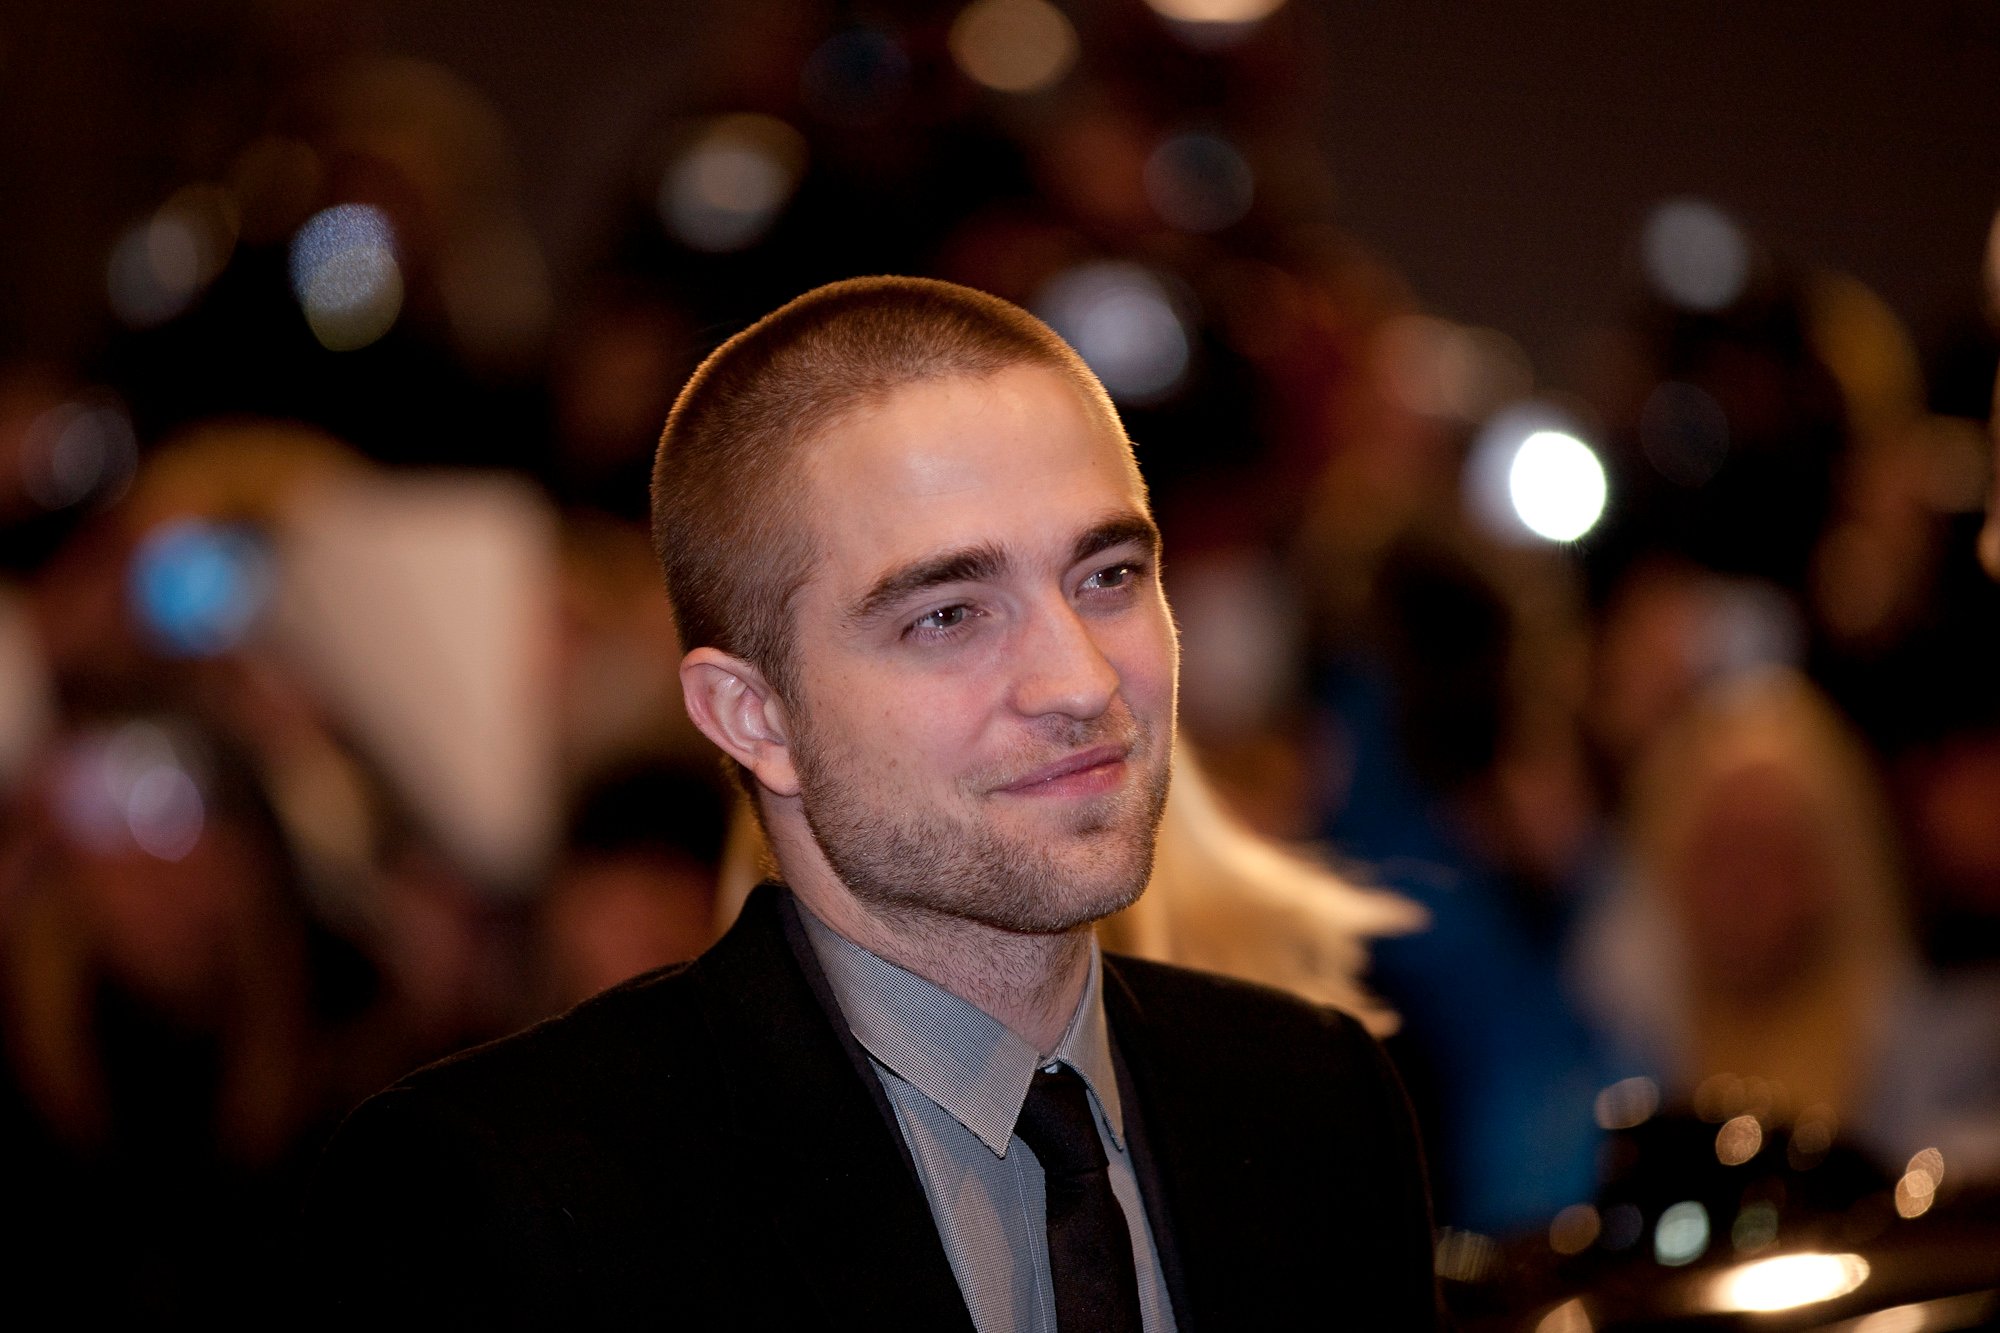 Pattinson ryktas vara aktuell för "The Hunger Games"-uppföljaren.